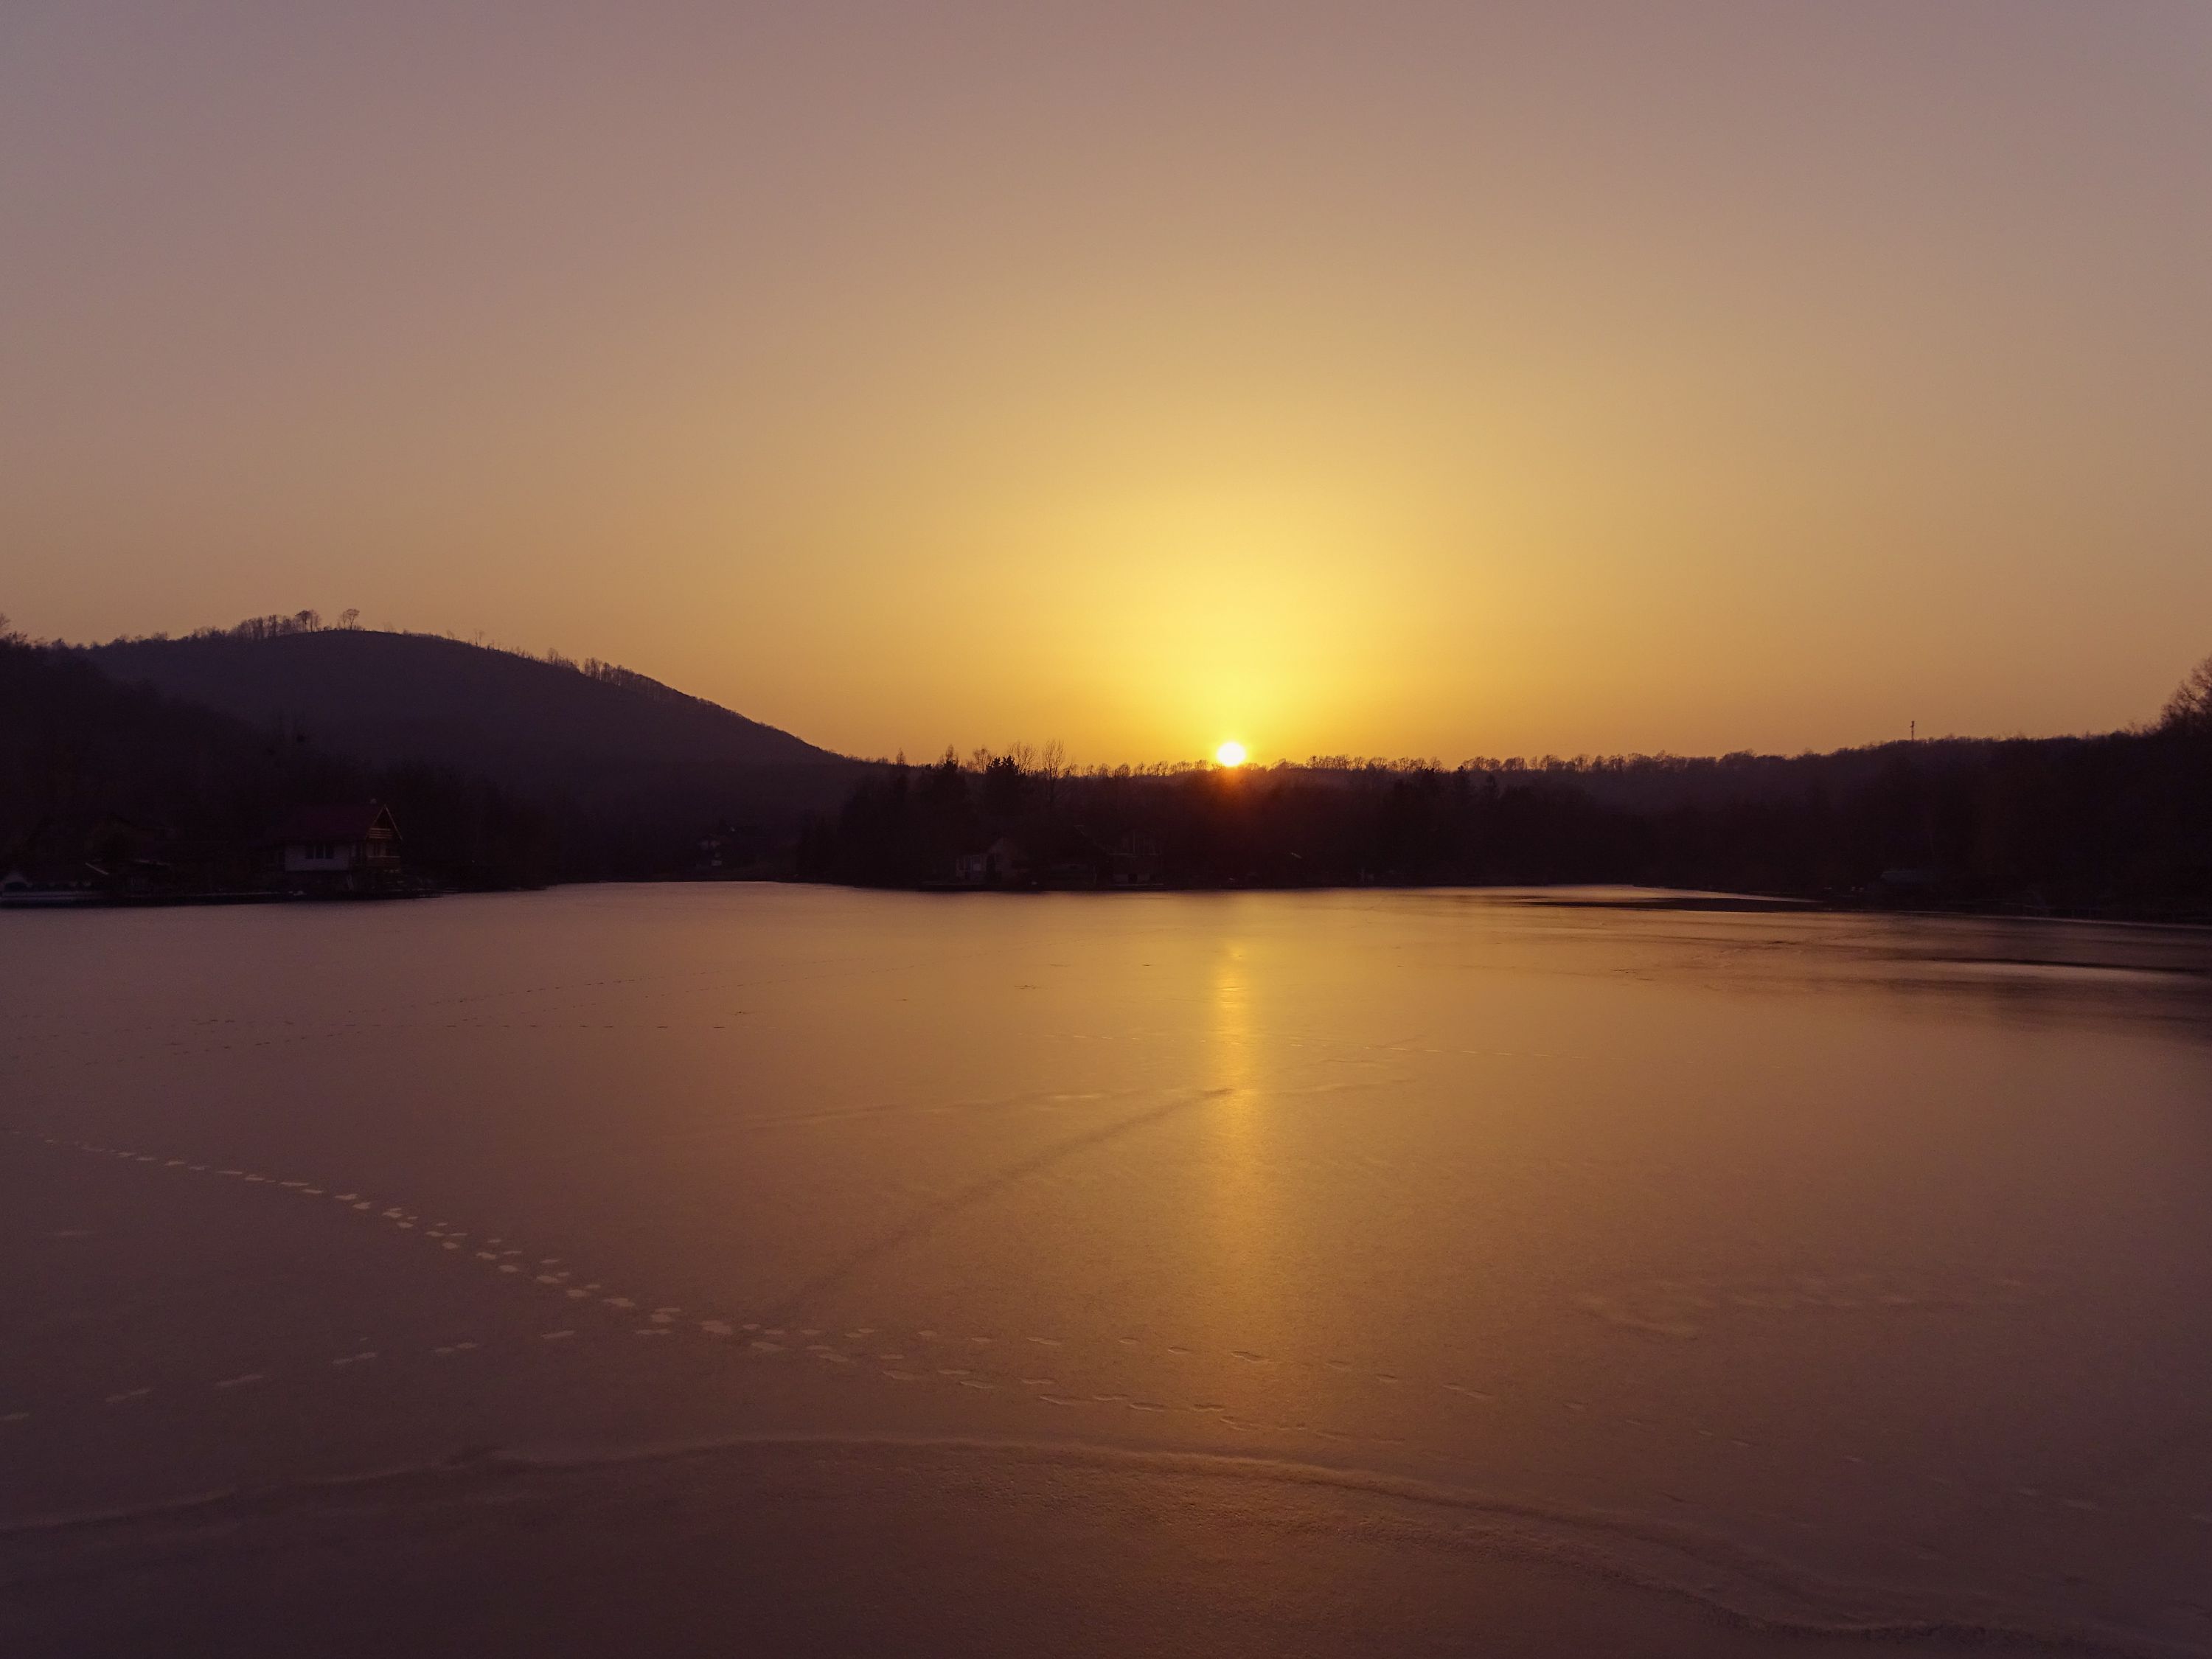 Sunset over frozen lake